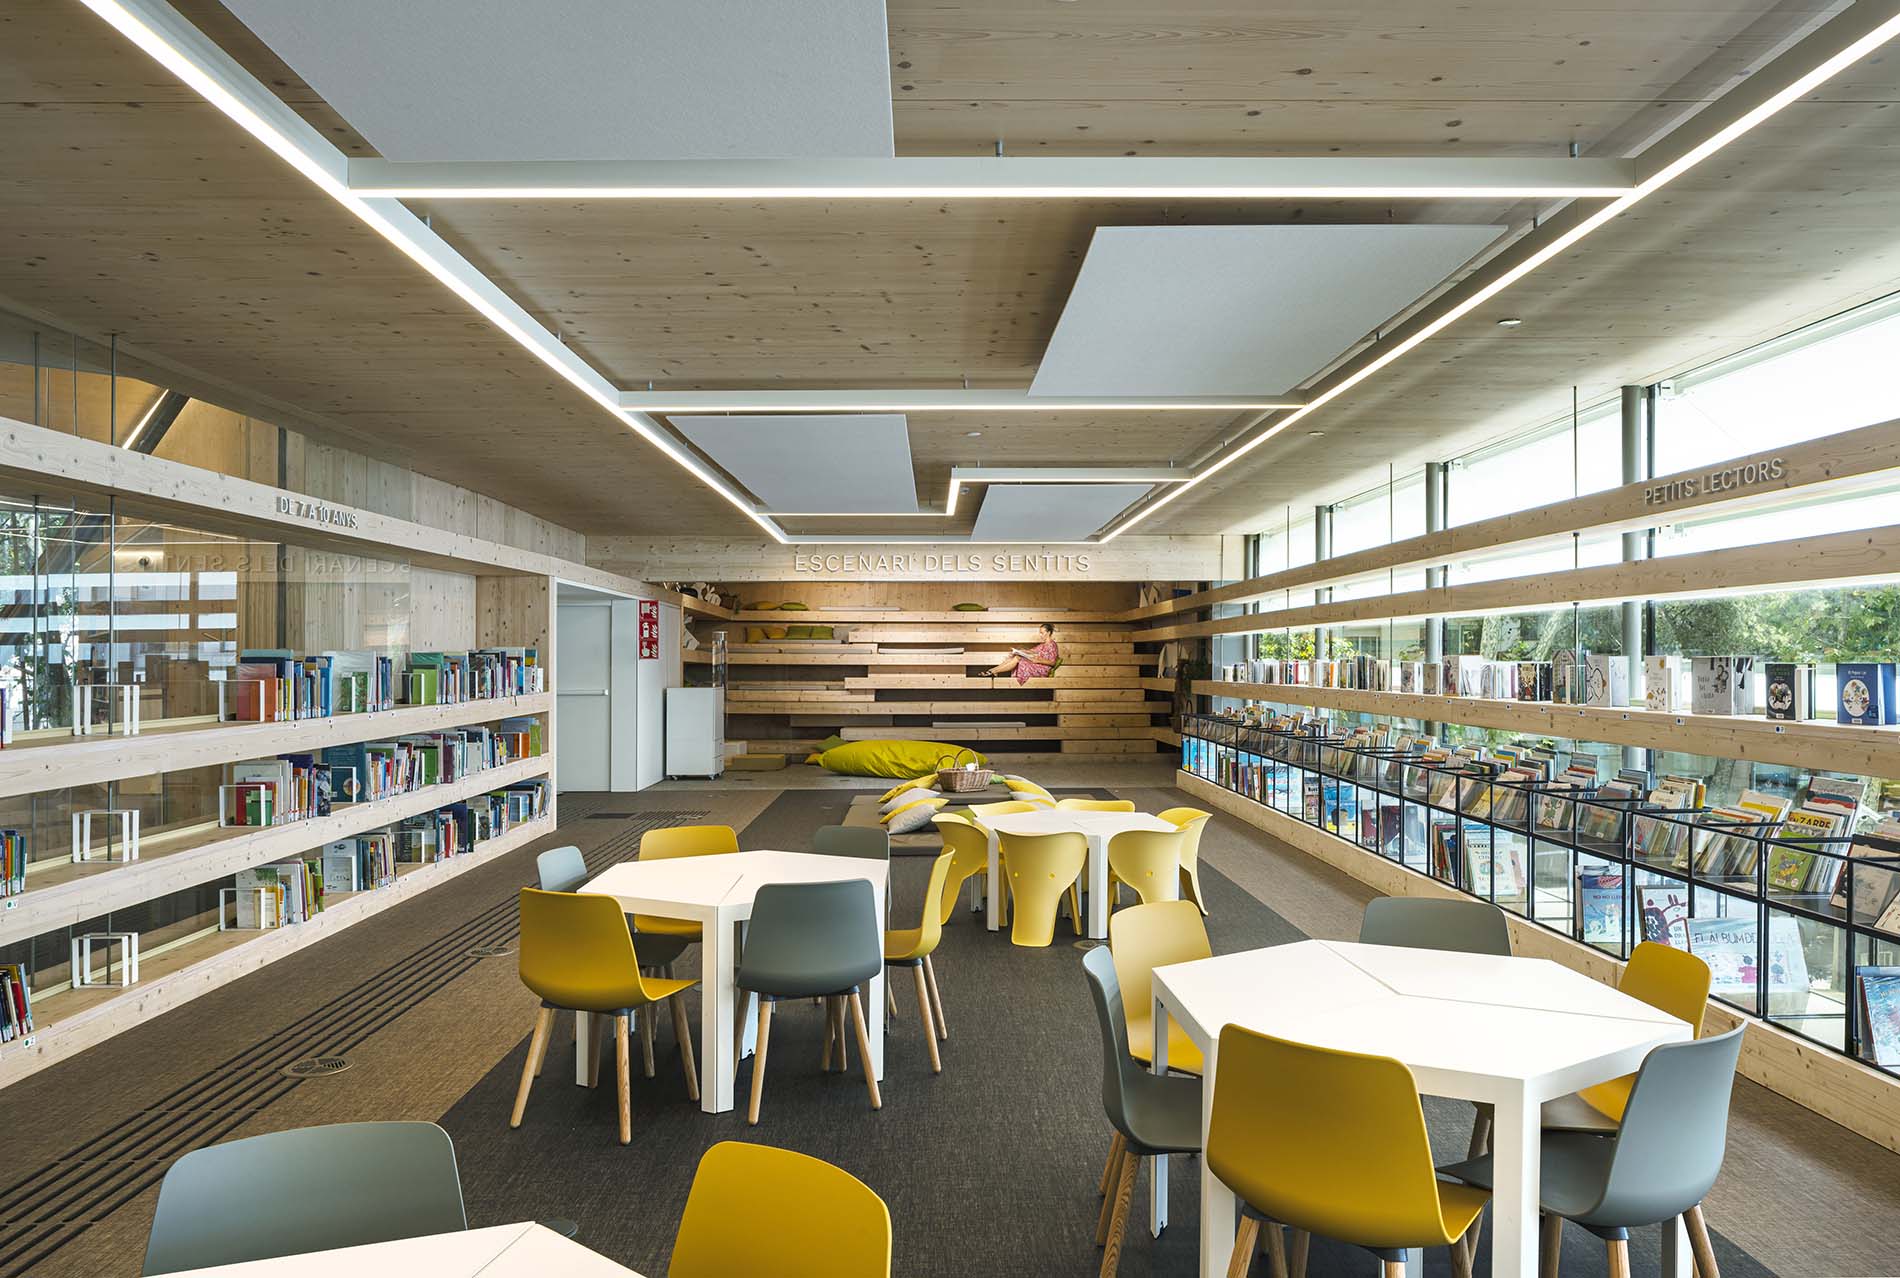 La Sala Infantil, un espacio renovado de la Biblioteca Gabriel García  Márquez